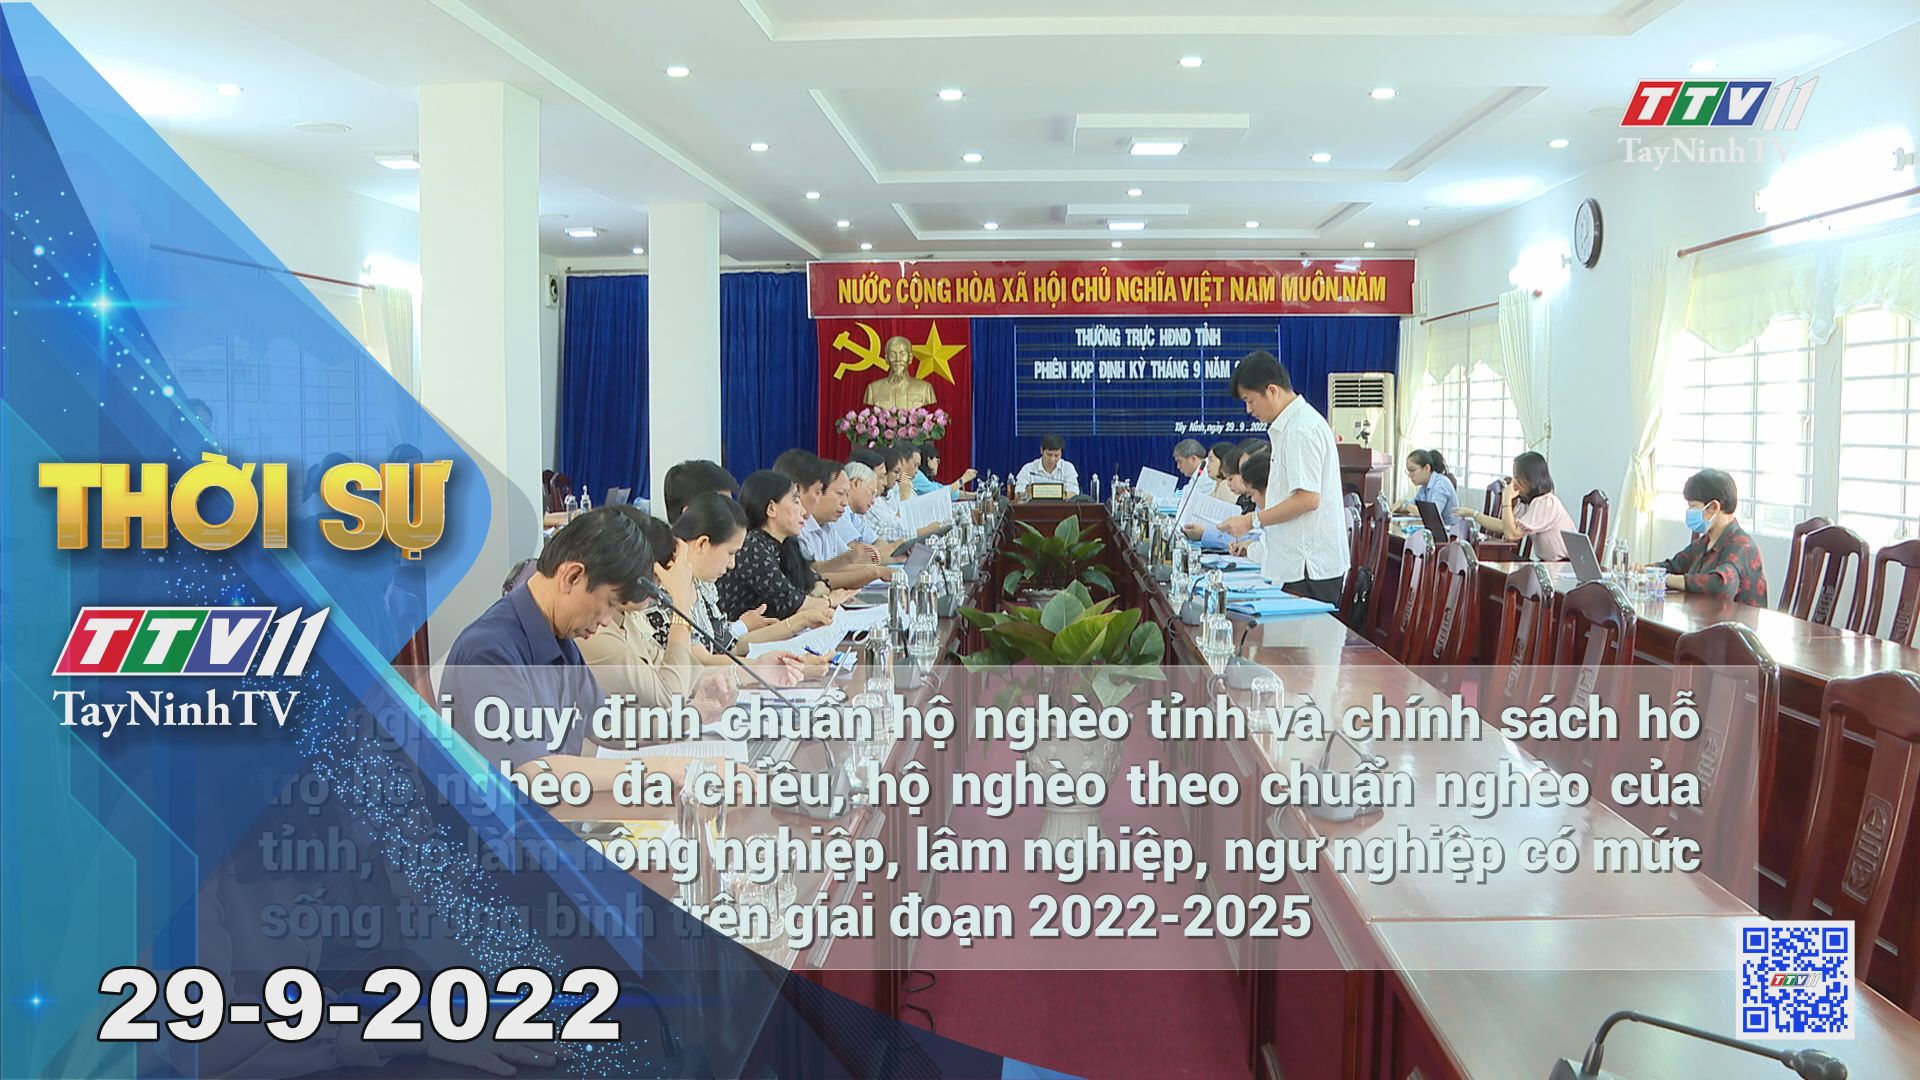 Thời sự Tây Ninh 29-9-2022 | Tin tức hôm nay | TayNinhTV